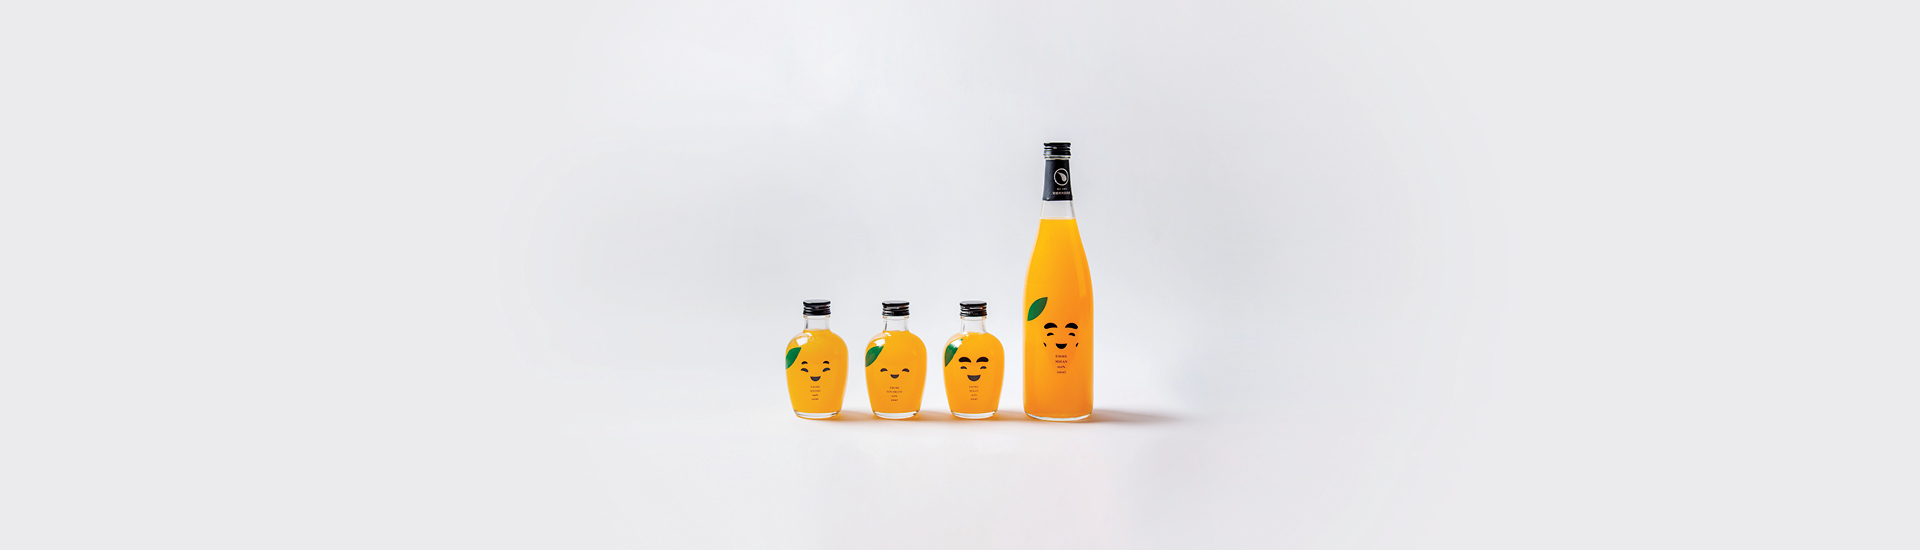 Quatro garrafas de vidro transparente com rostos desenhados nela, com líquido laranja dentro, fazendo alusão à fruta laranja. O fundo da imagem é branco.